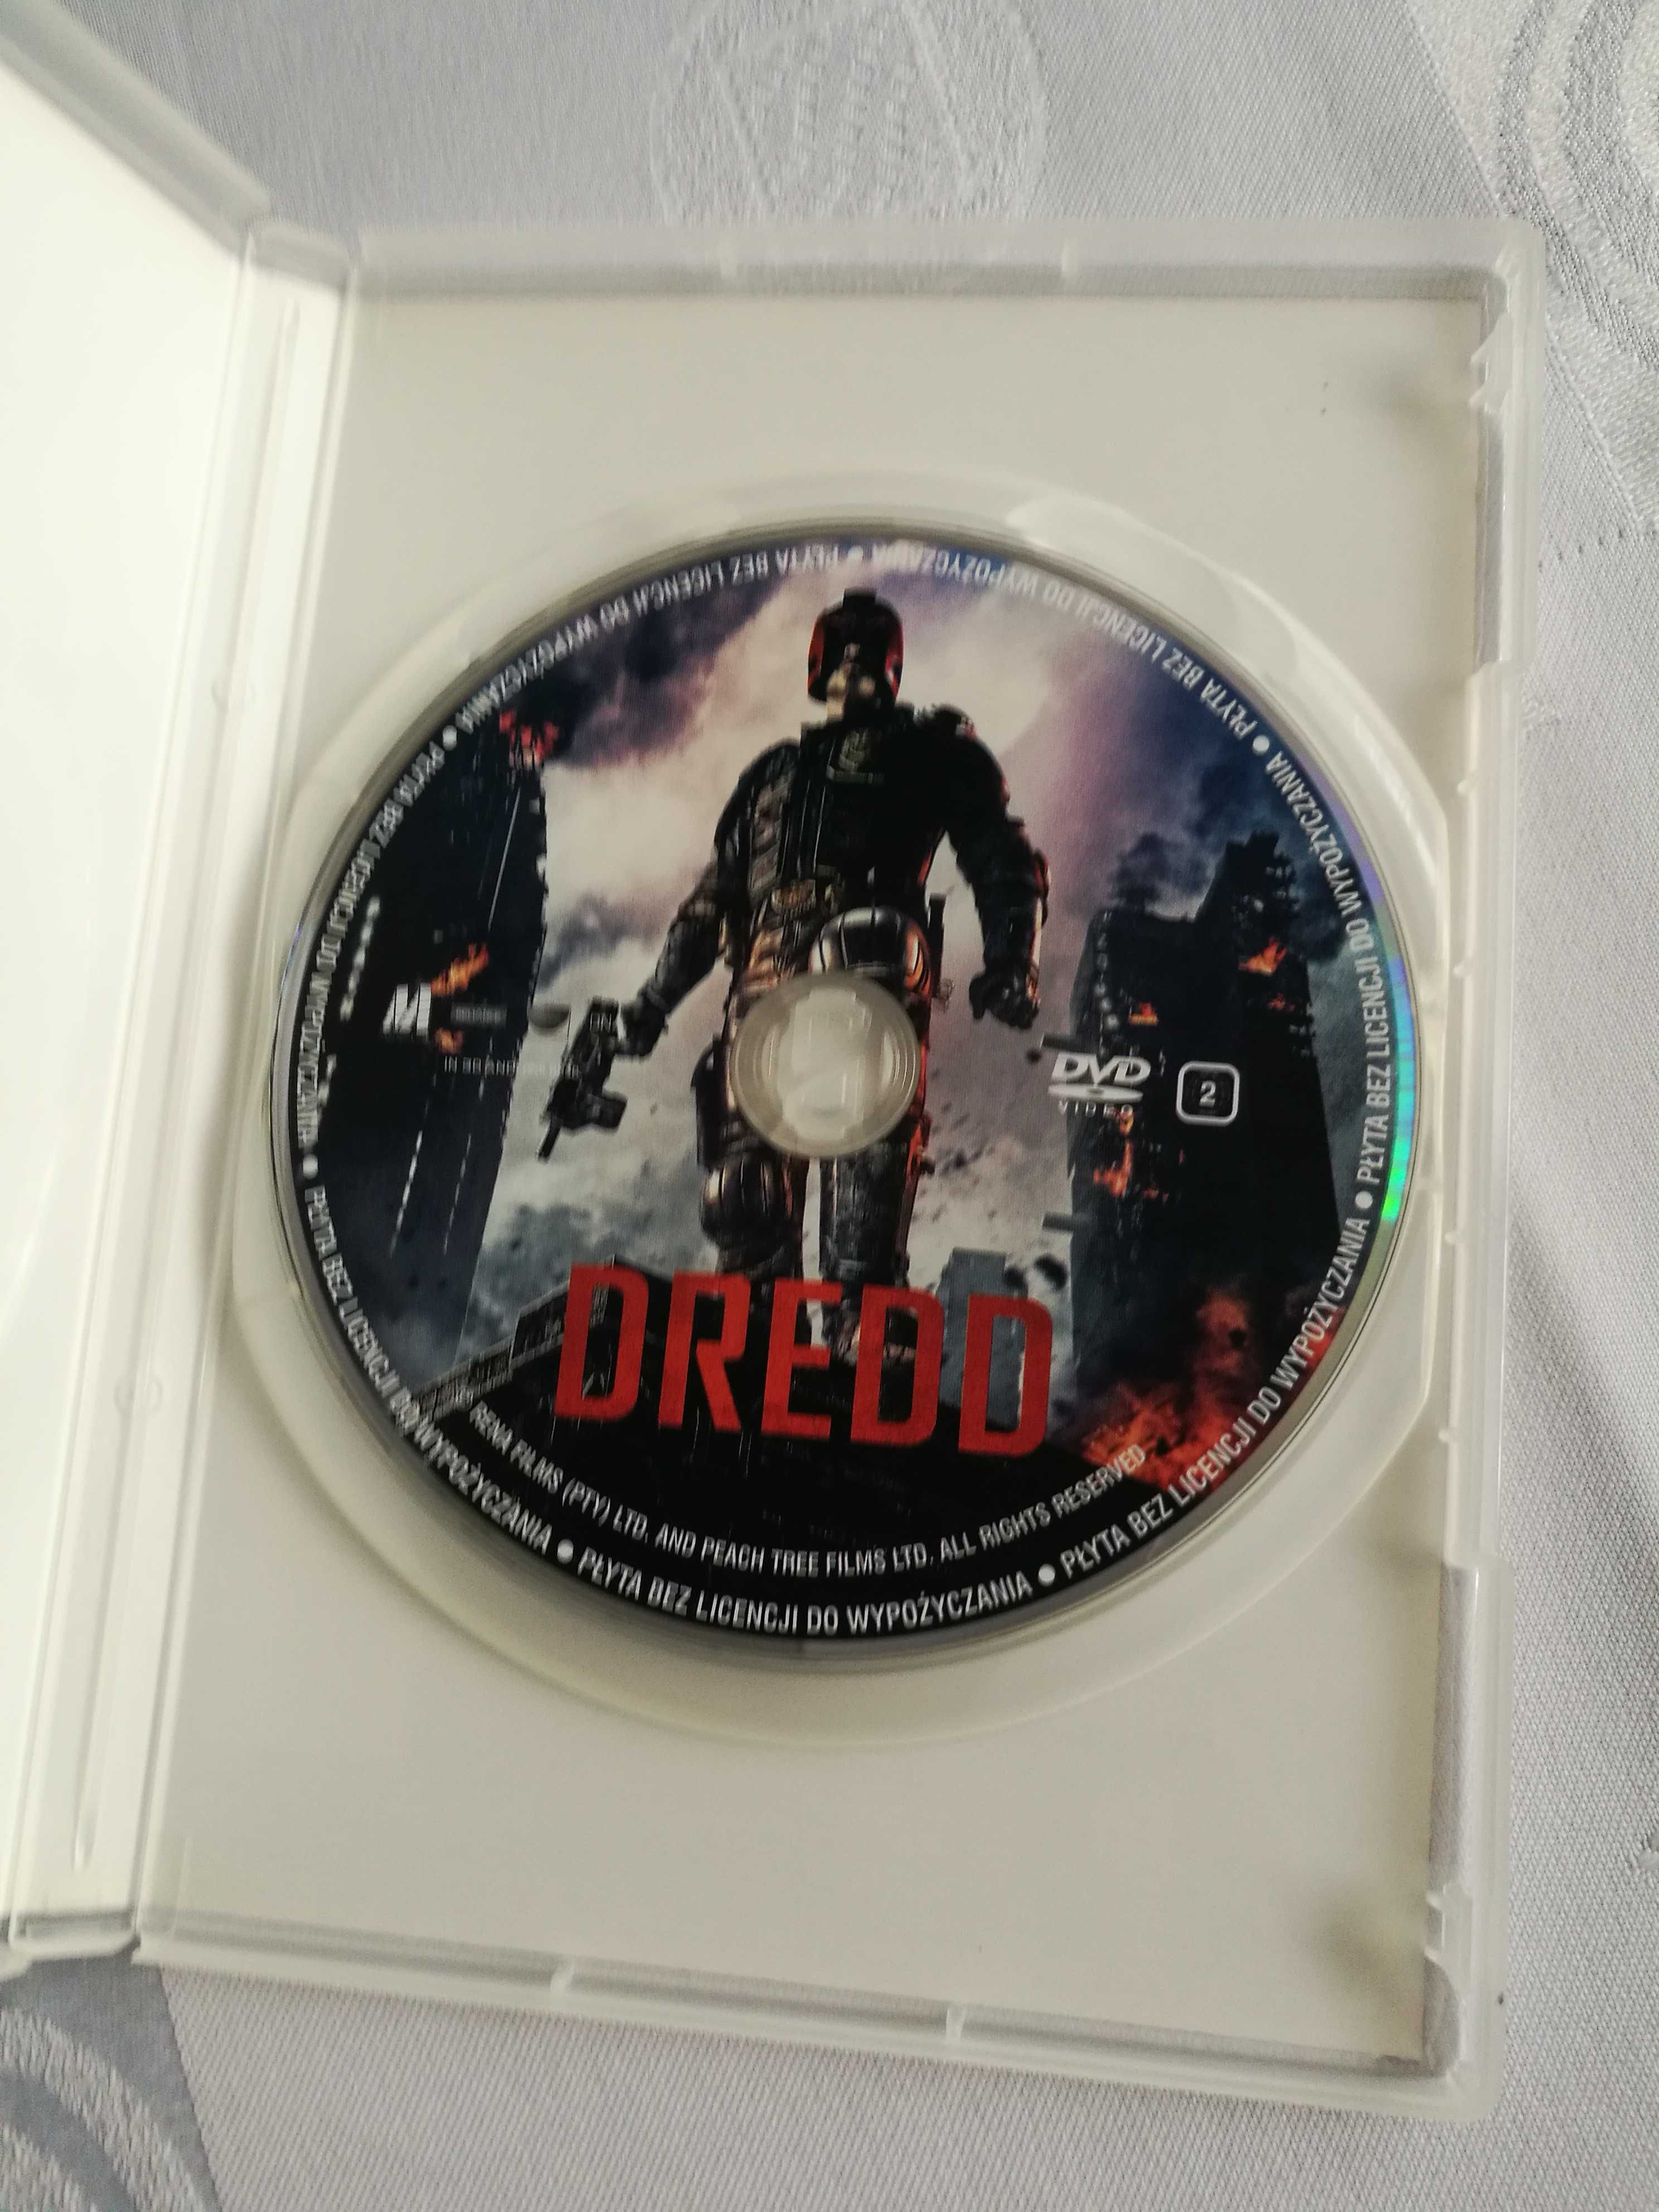 Film DVD "Dredd"